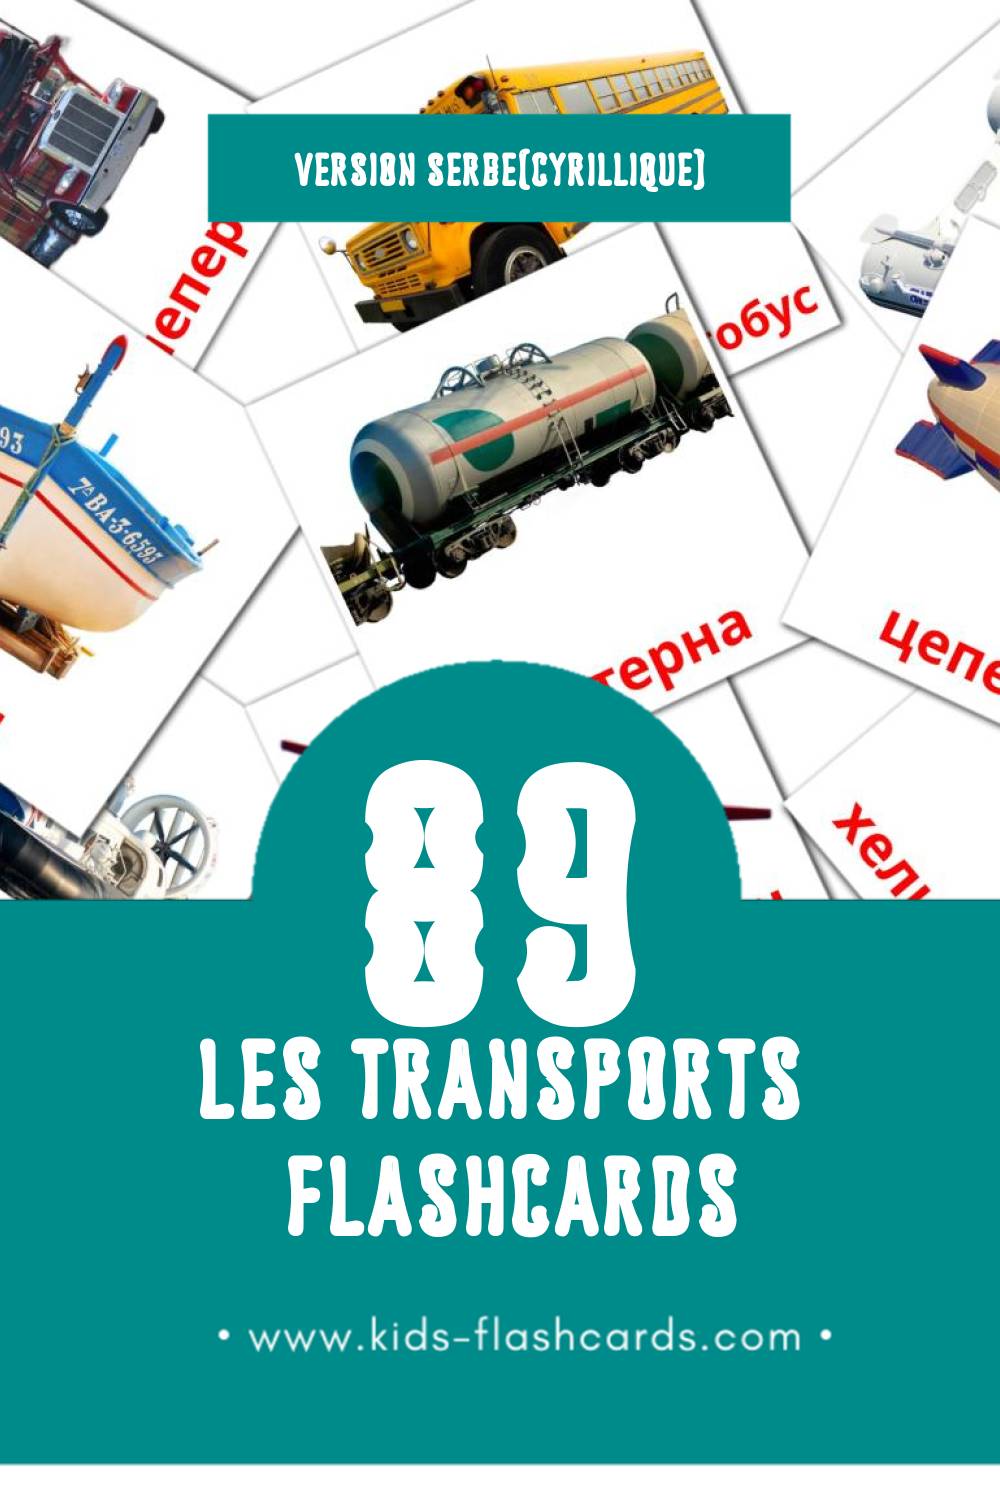 Flashcards Visual Саобраћај pour les tout-petits (89 cartes en Serbe(cyrillique))